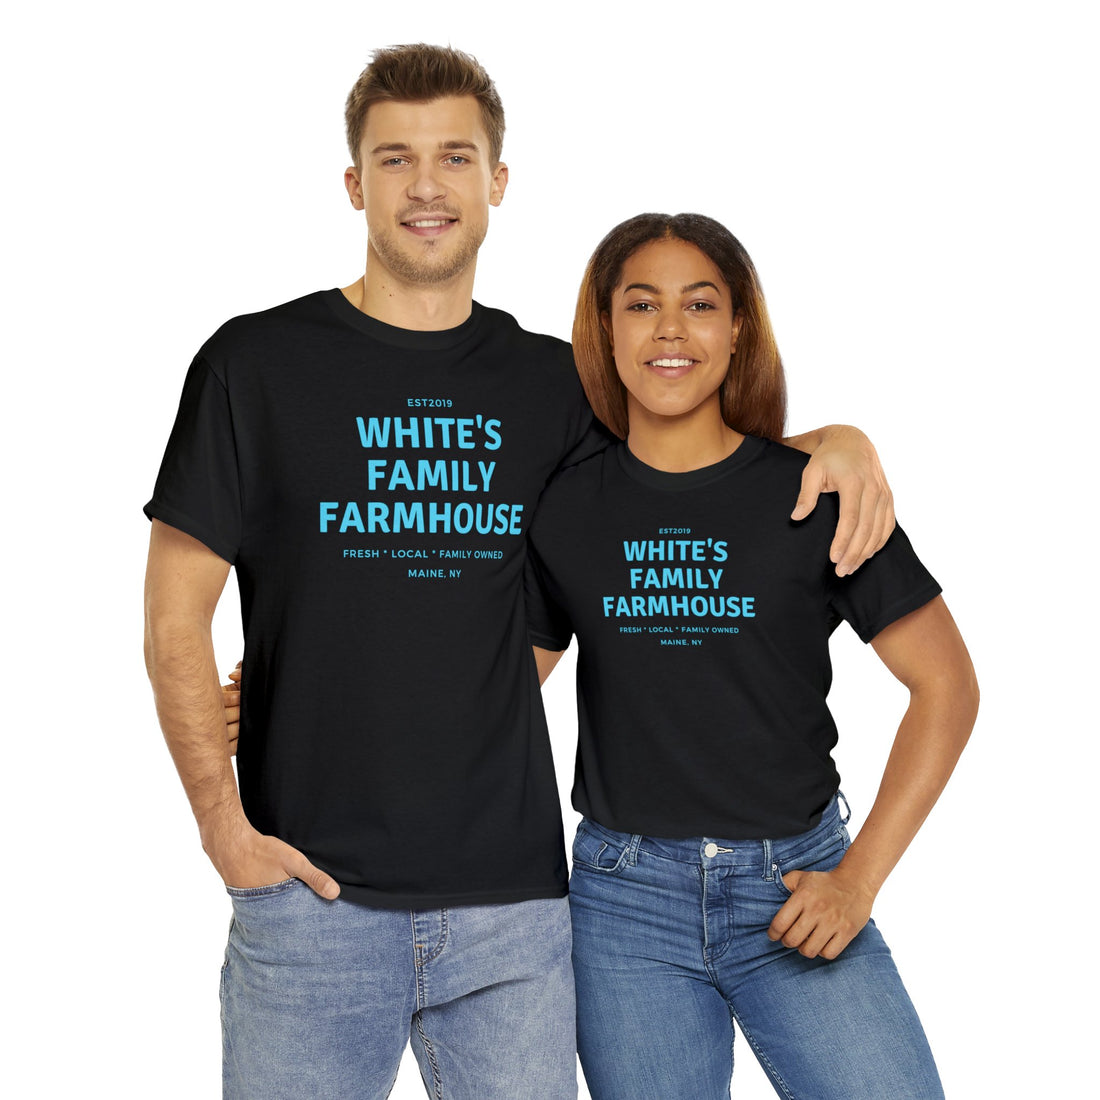 White's Family Farmhouse Tee - White's Family Farmhouse 